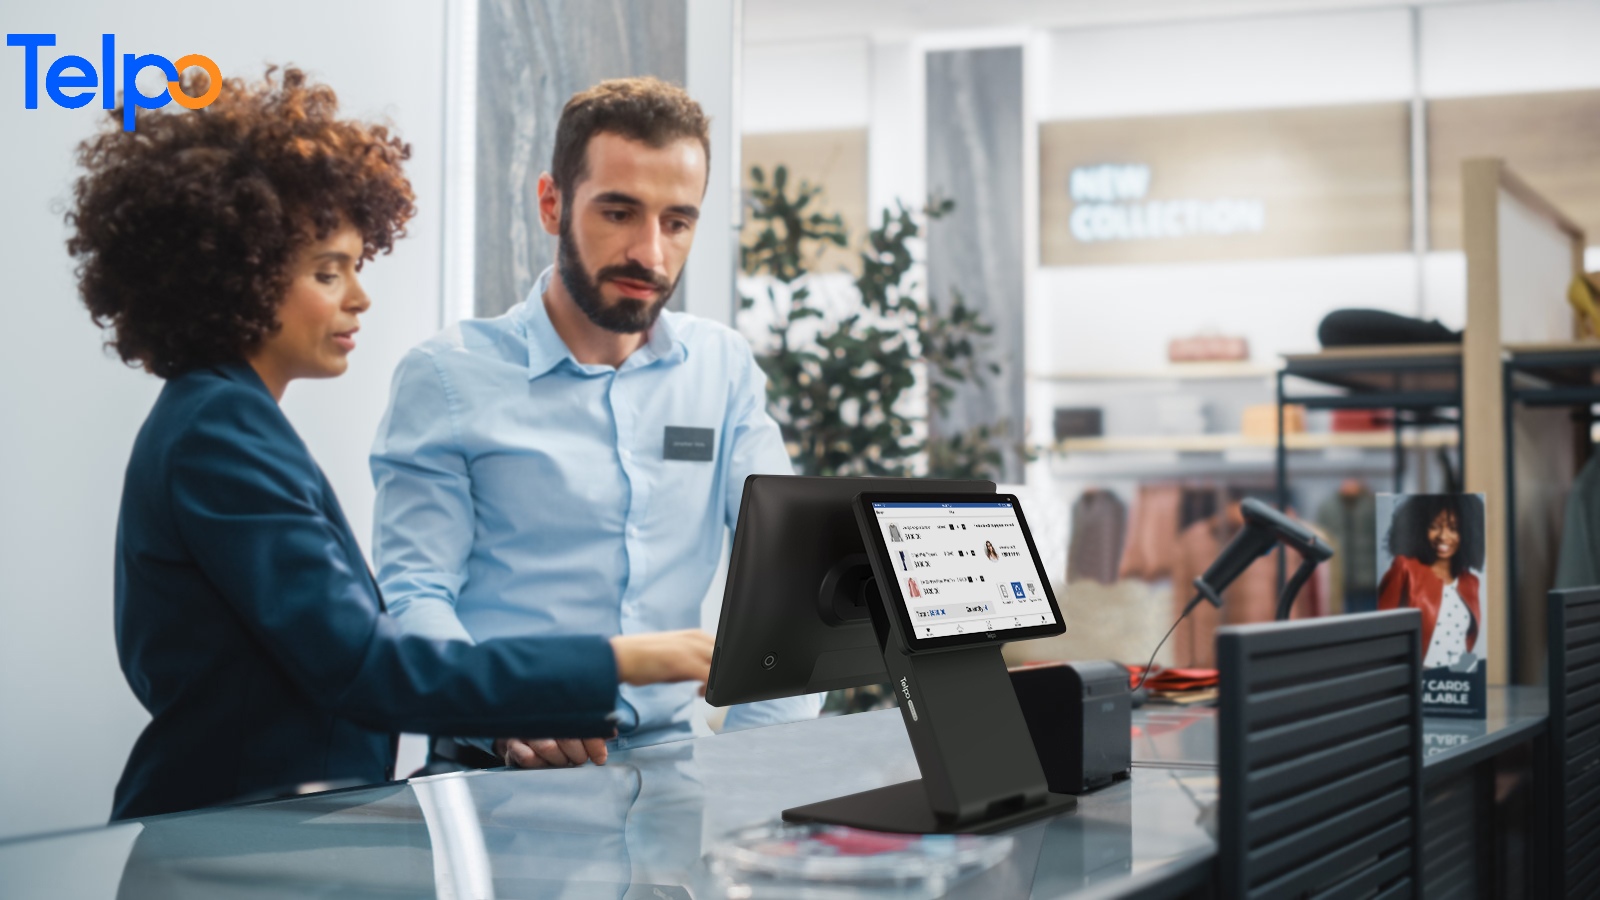 desktop POS smart cash register